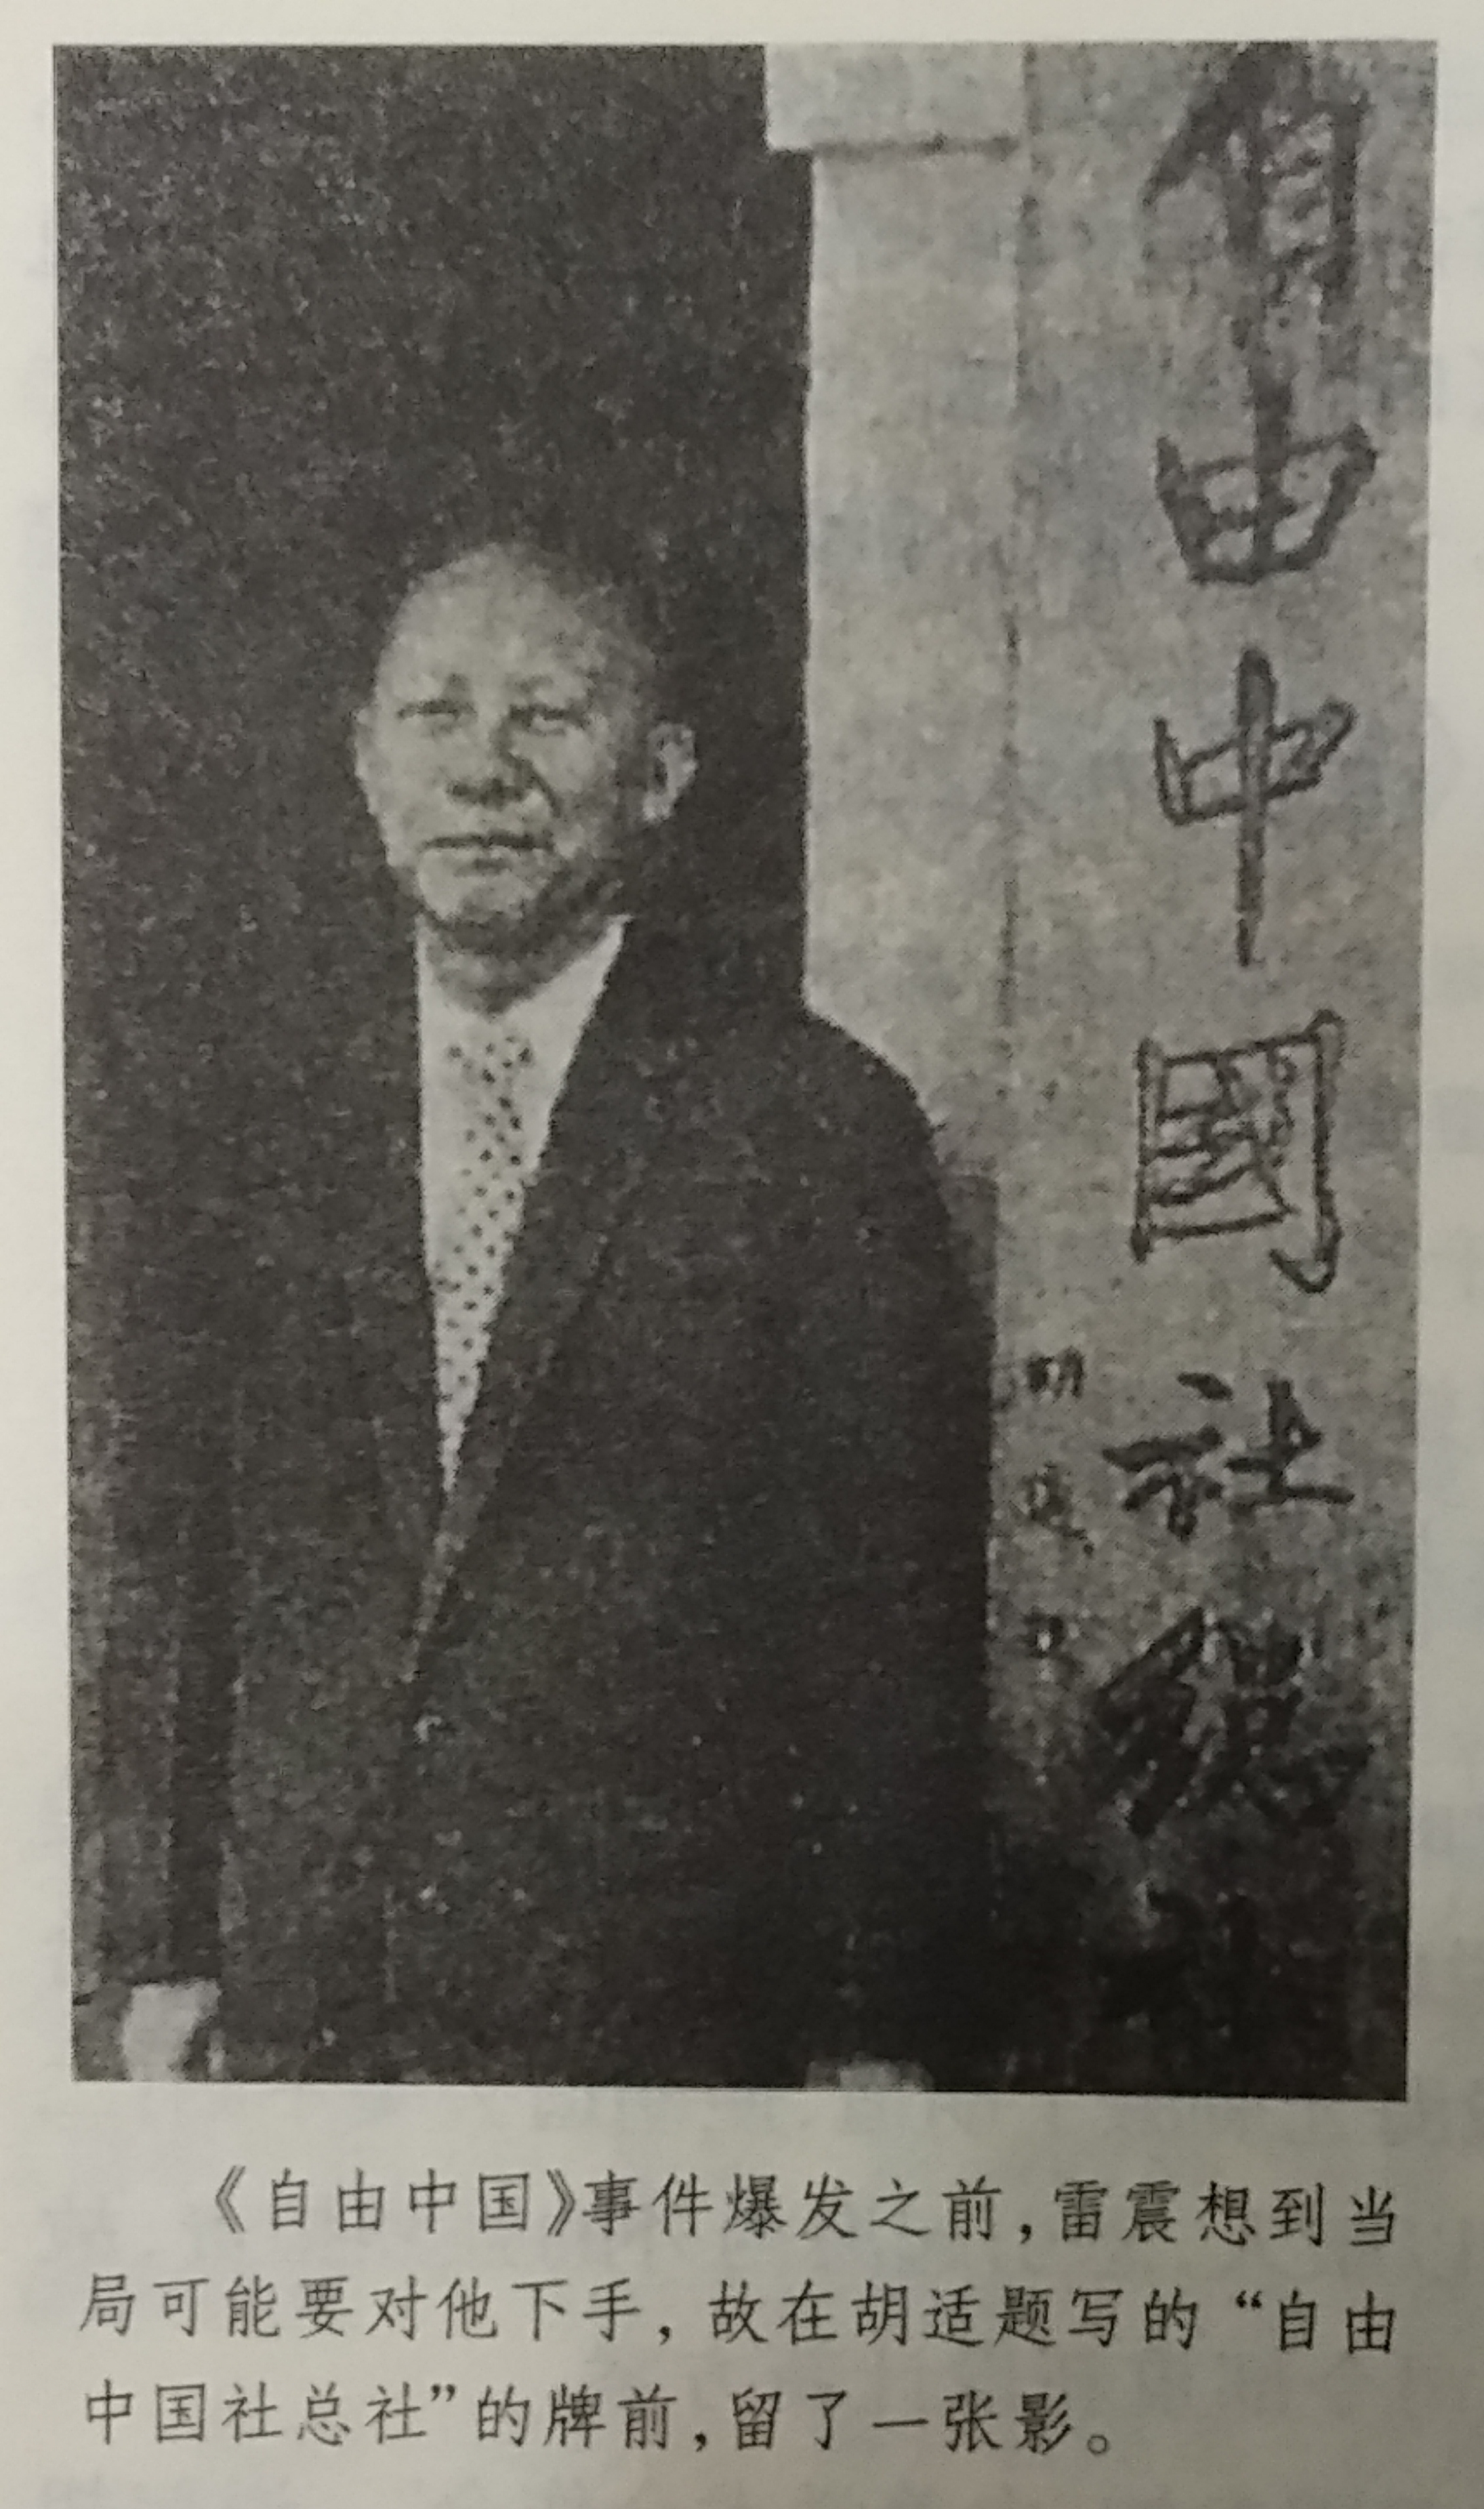 雷震在胡適題寫的“自由中國社總社”的牌前留影